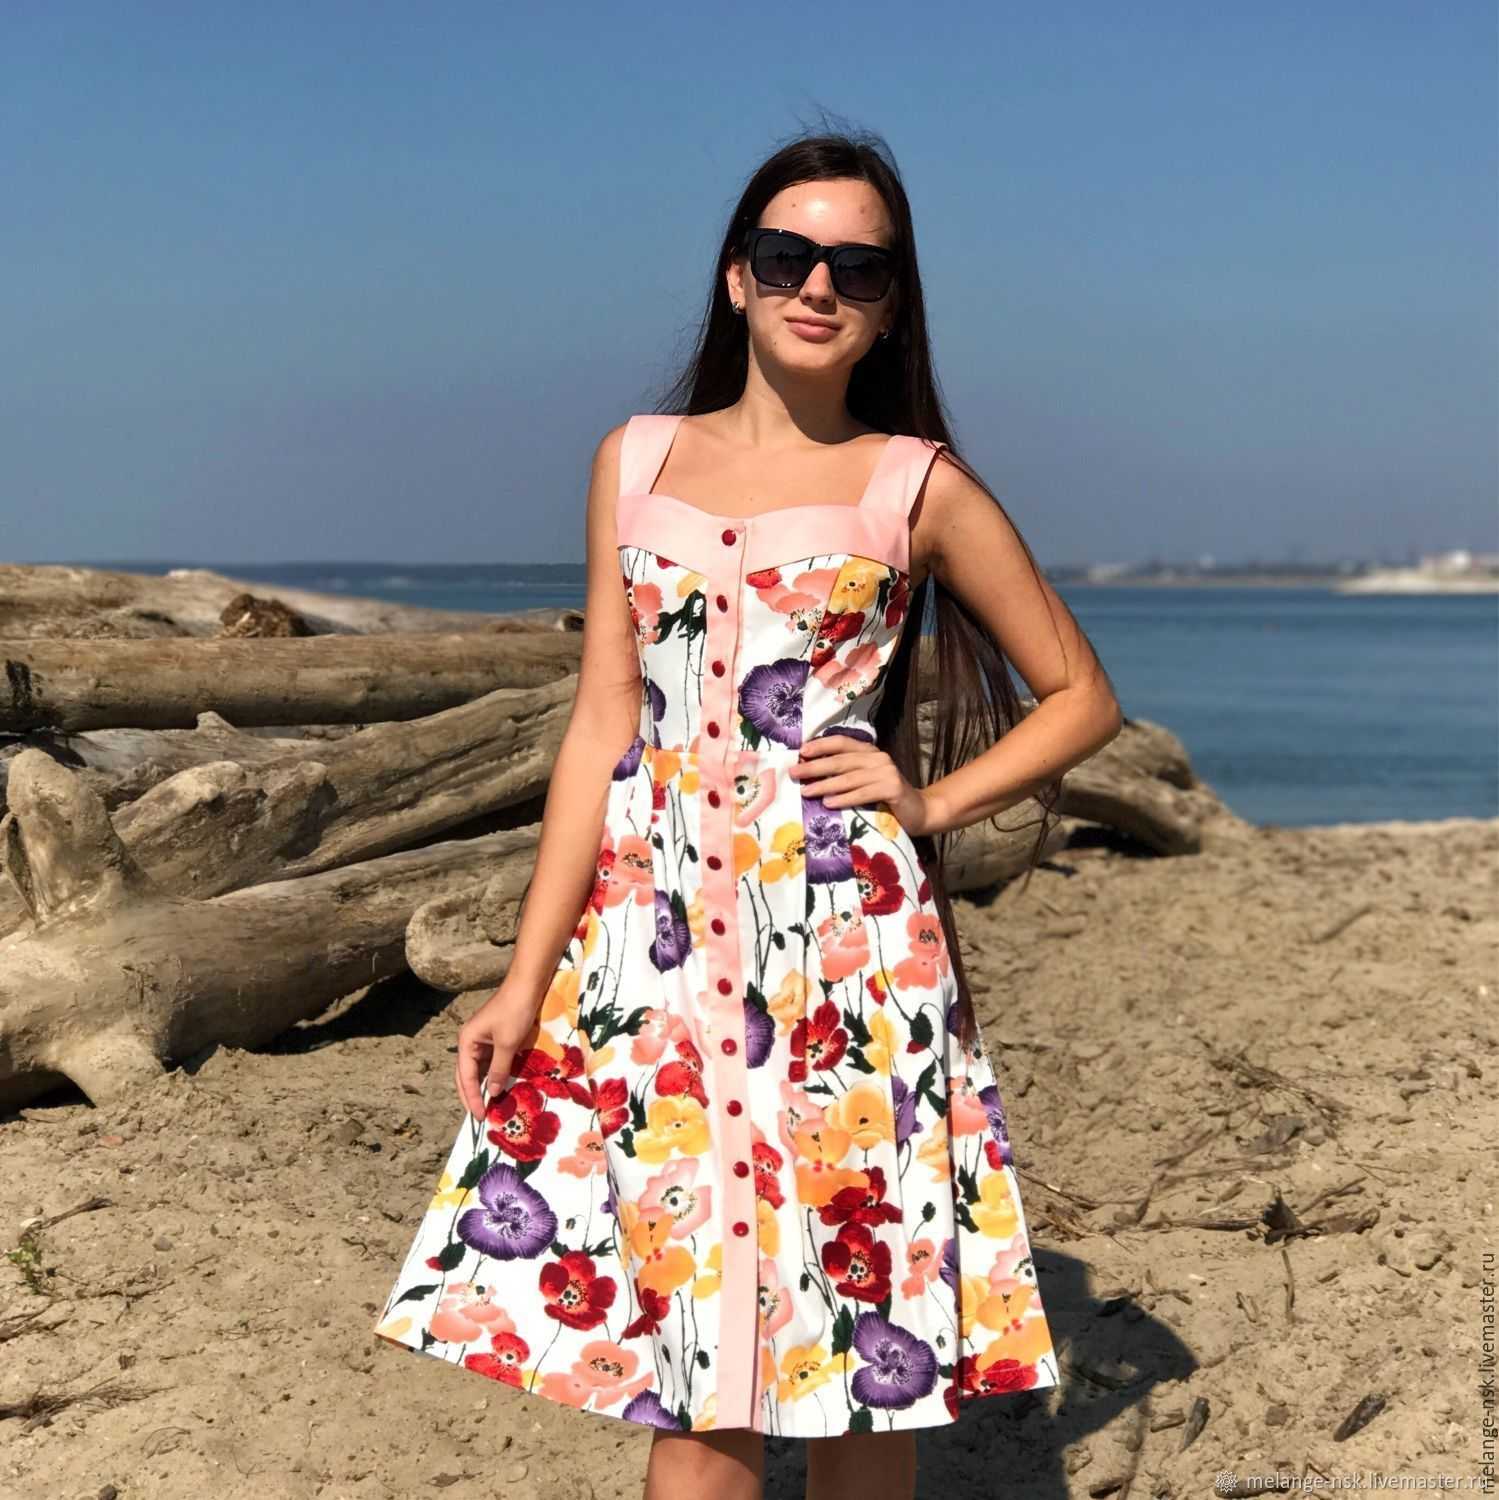 Джинсовое платье и сарафаны 2019: фото моделей и советы по выбору